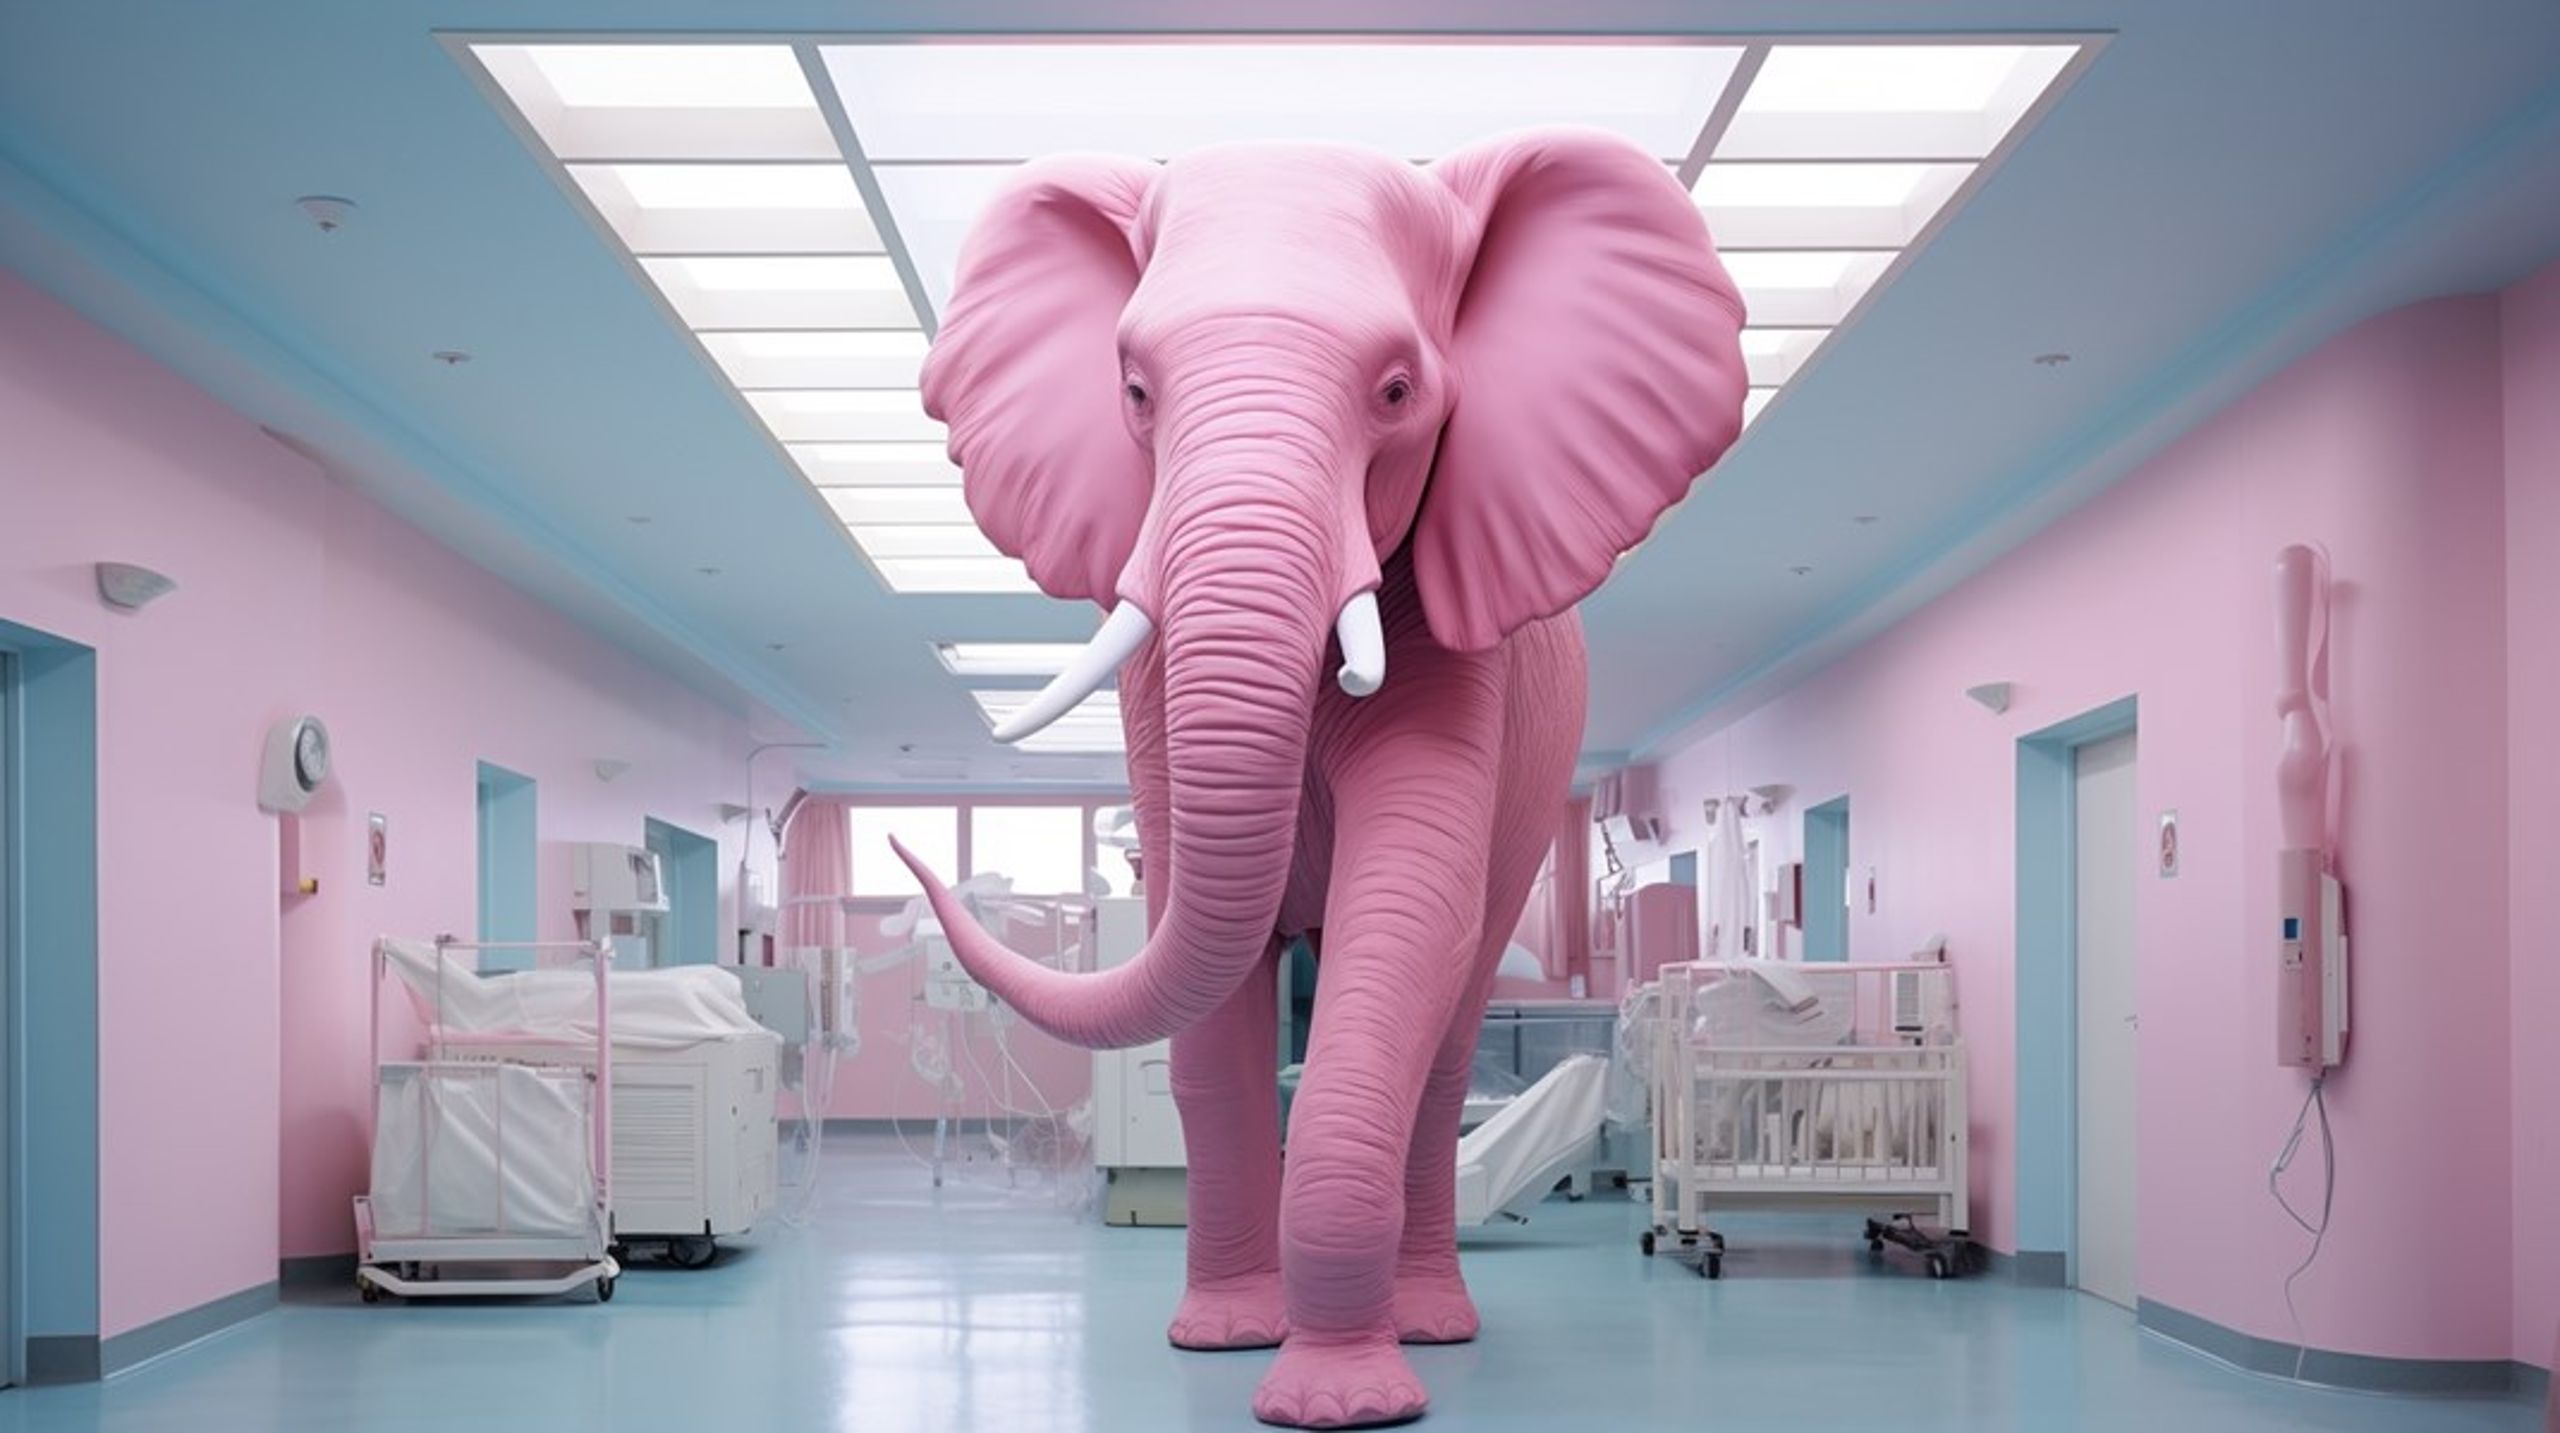 Det finns en rosa elefant i rummet som vi måste prata om, skriver debattören.